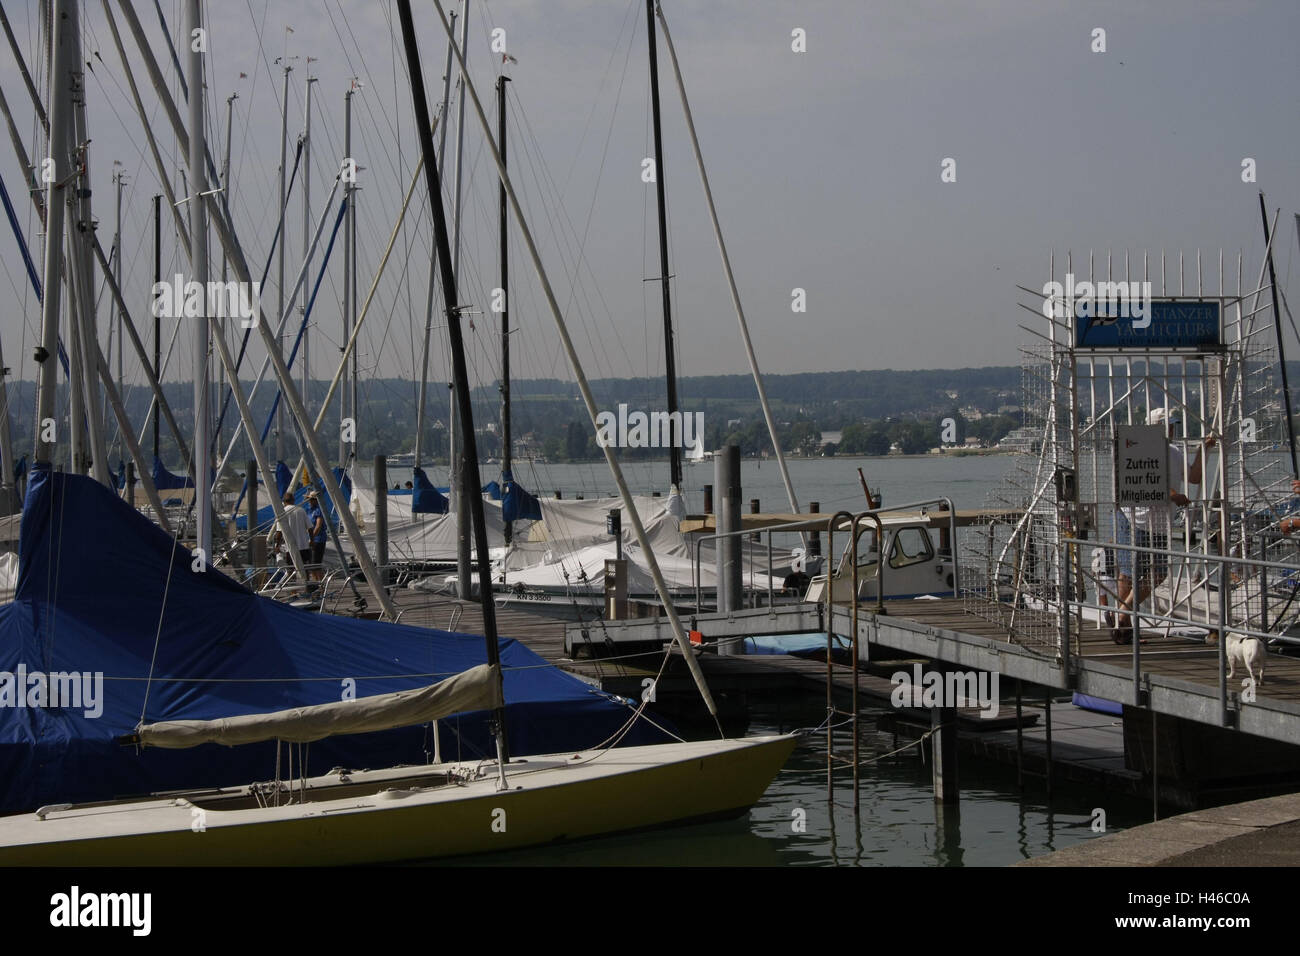 Costanza nel lago di Costanza, yacht harbour, Foto Stock